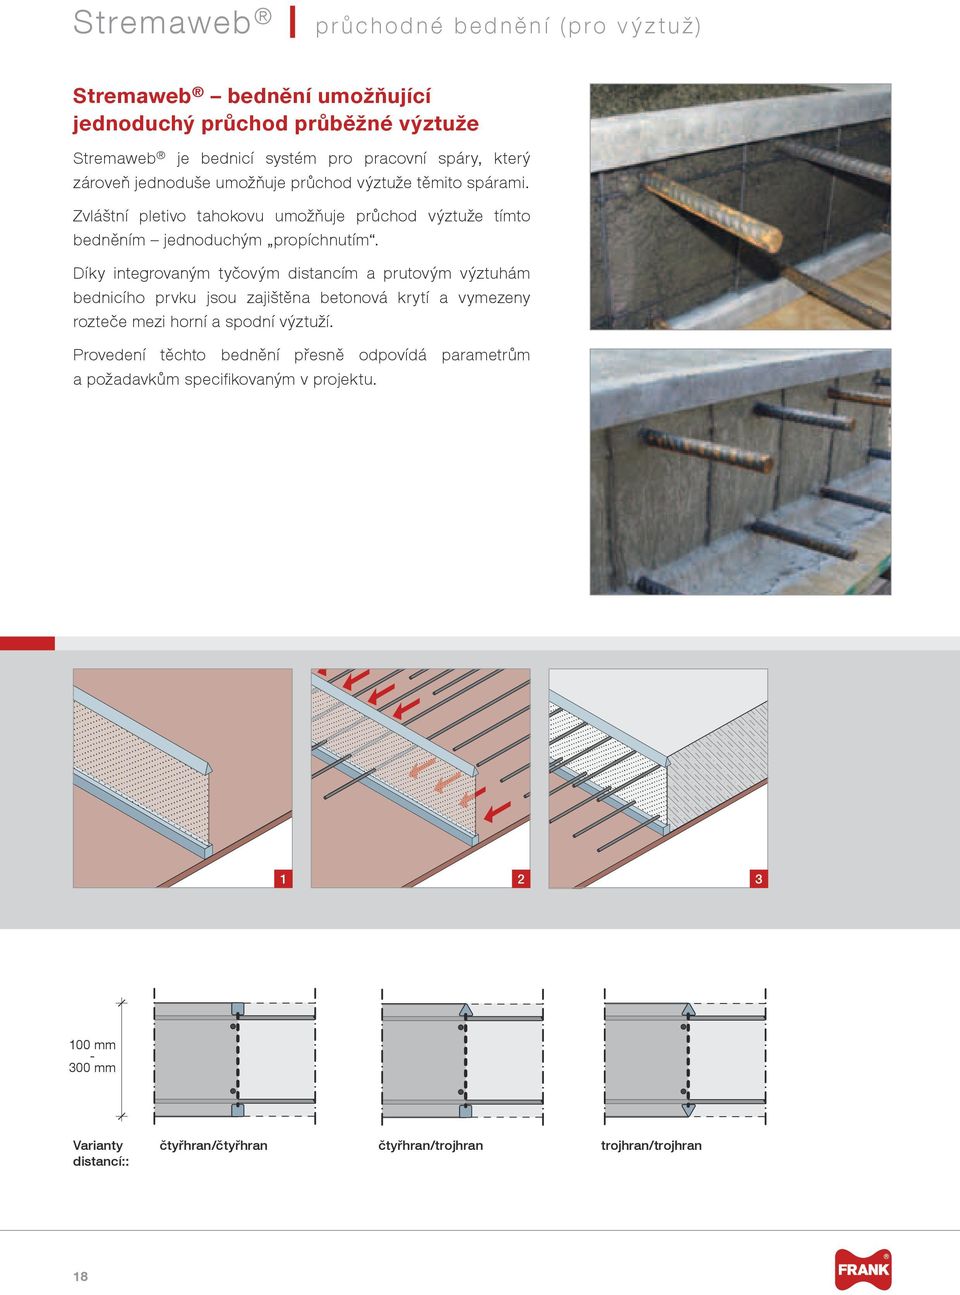 Díky integrovaným tyčovým distancím a prutovým výztuhám bednicího prvku jsou zajištěna betonová krytí a vymezeny rozteče mezi horní a spodní í.